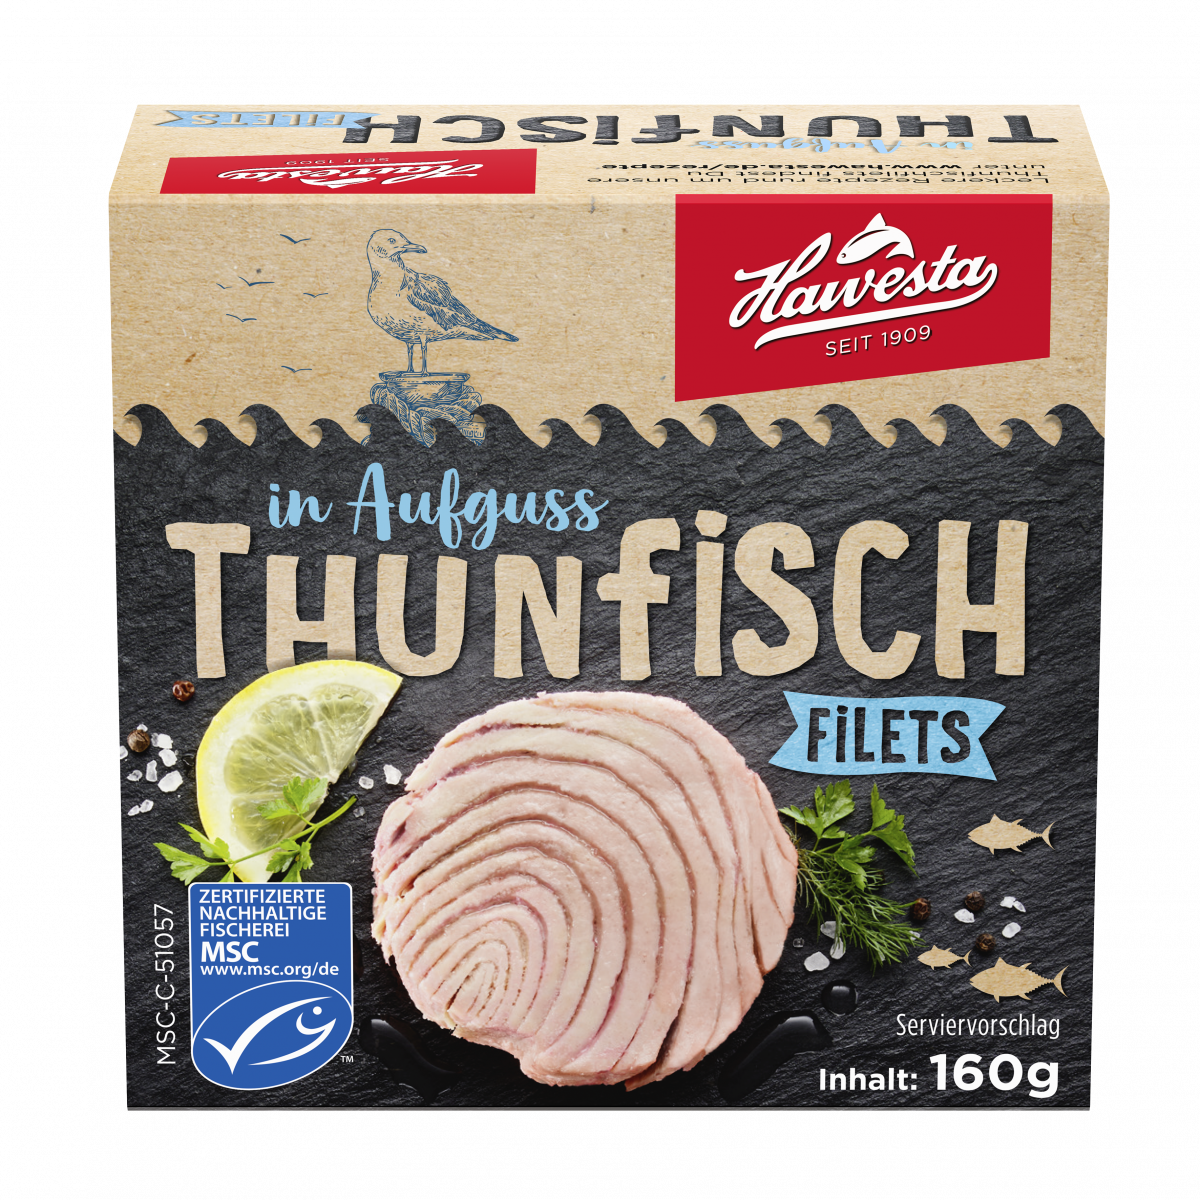 Hawesta Thunfisch in Aufguss